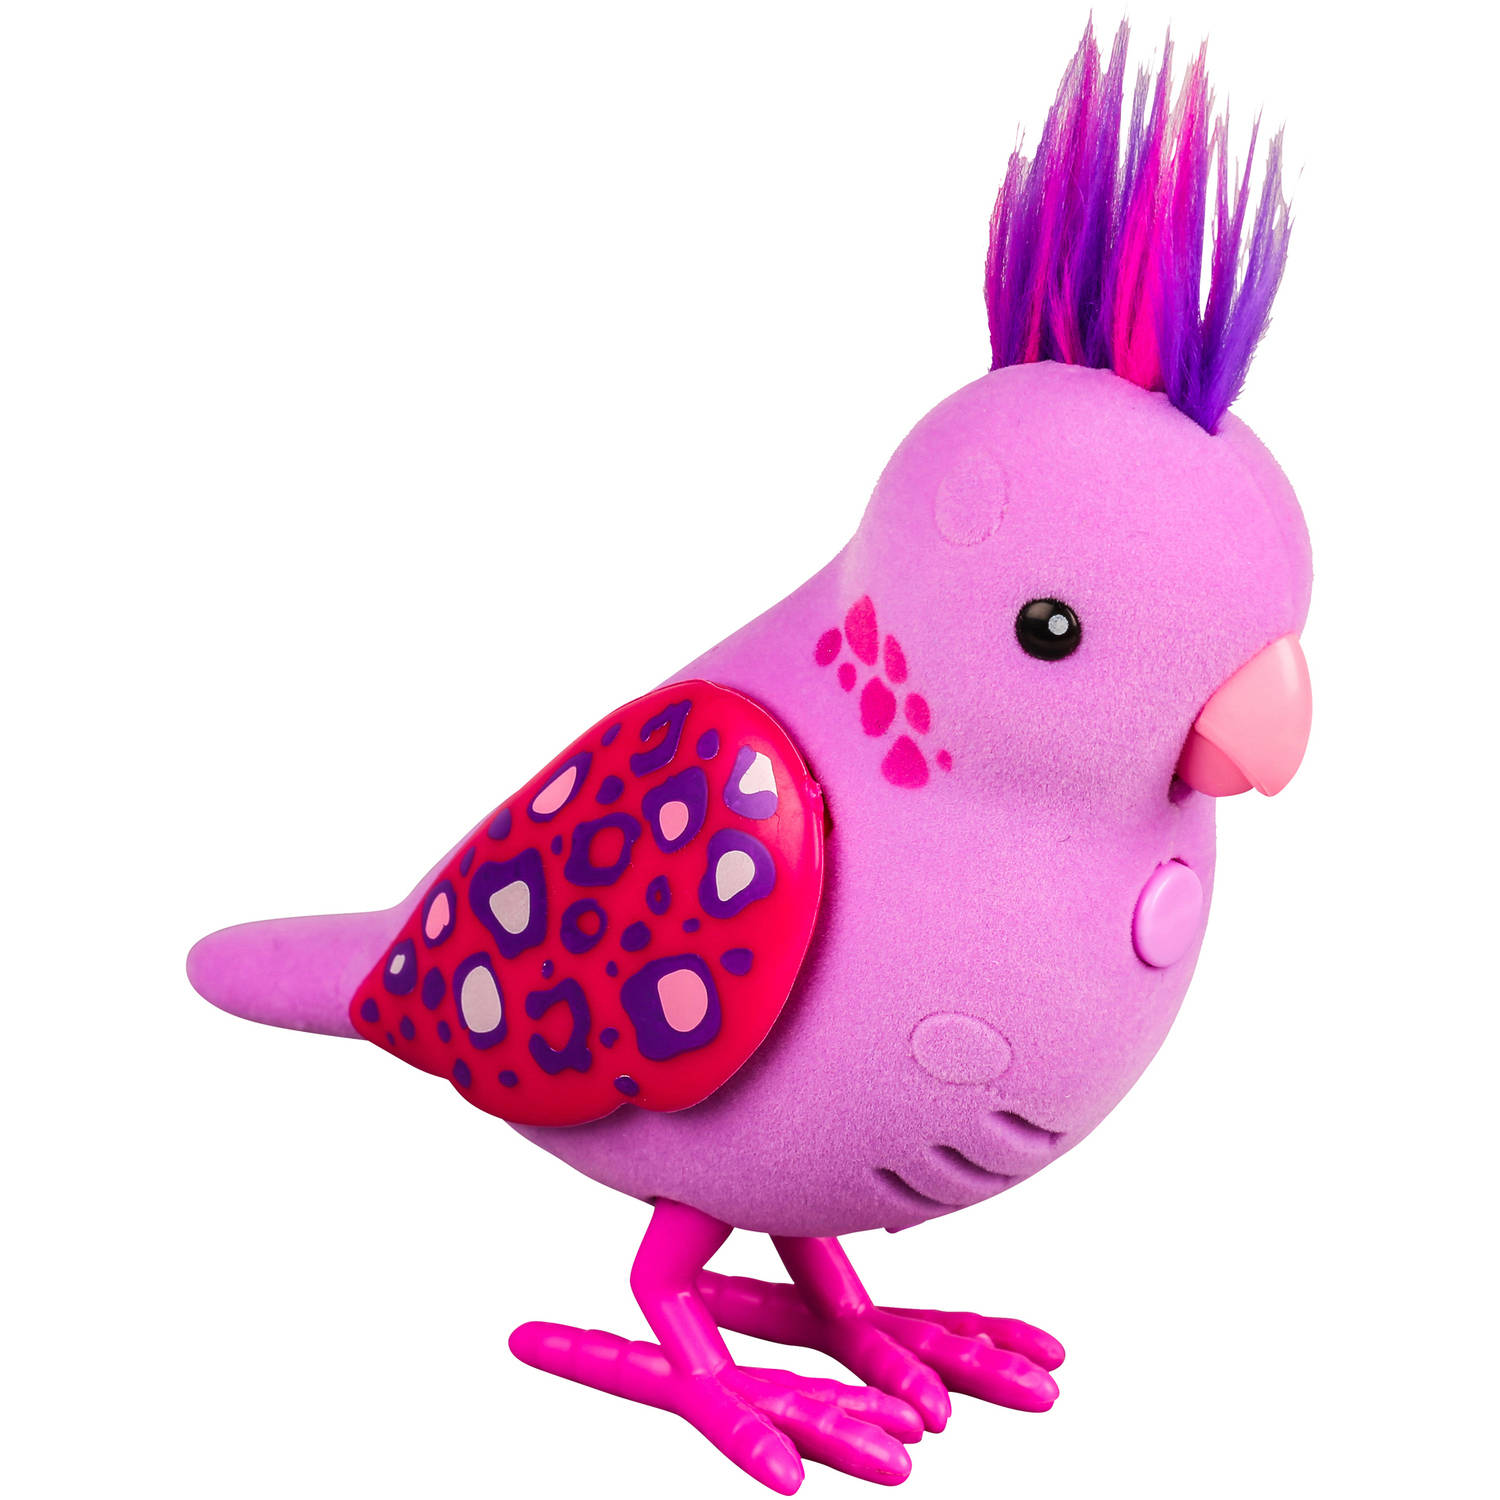 Pink pets. Little Live Pets птичка. Игрушка "птичка". Говорящая птица игрушка. Говорящая птичка игрушка.